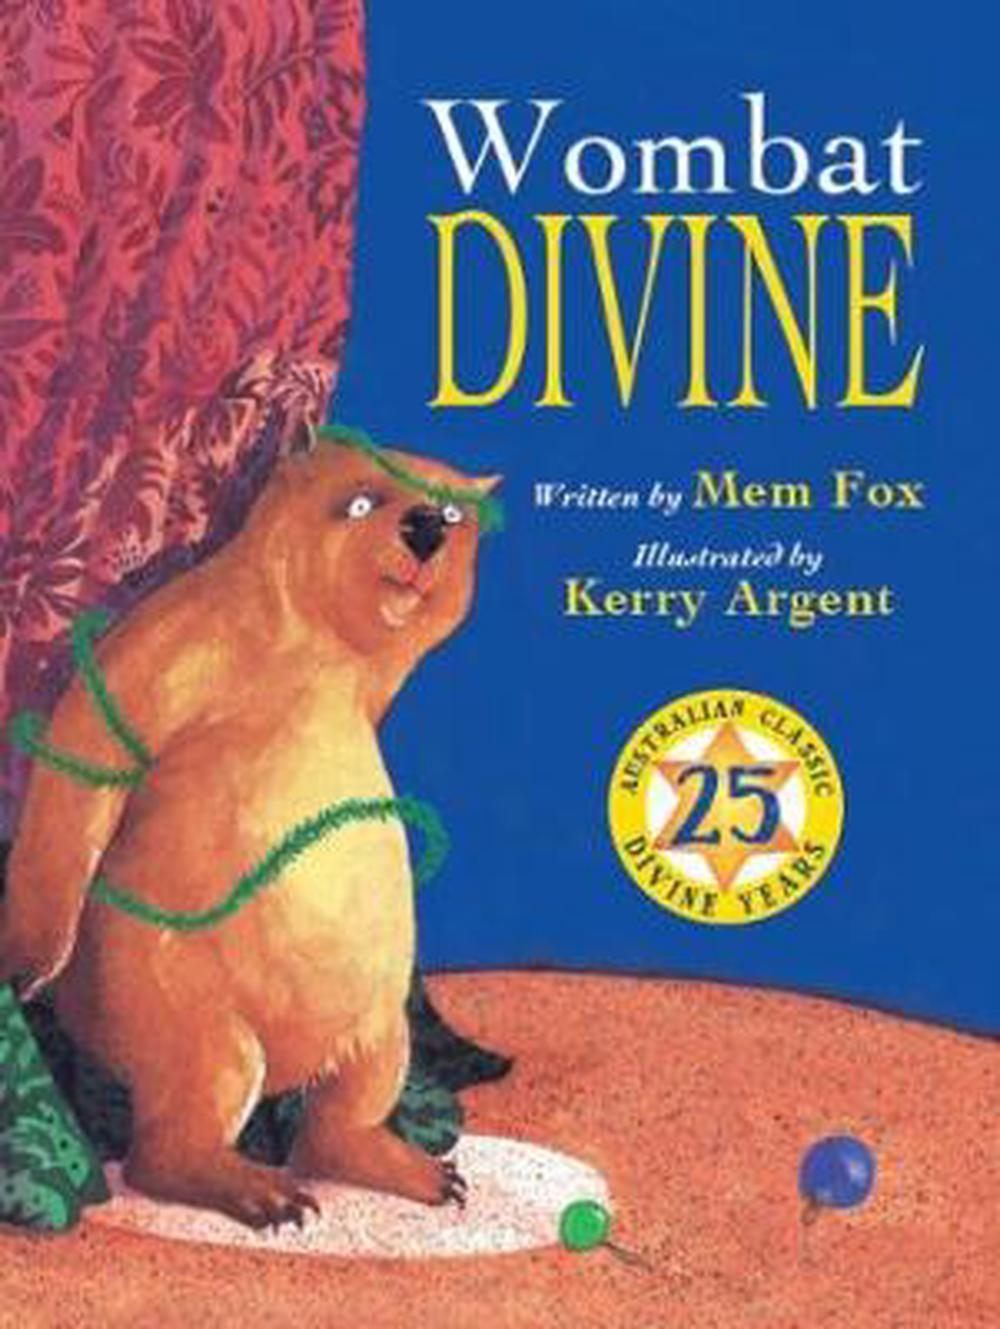 wombat divine book